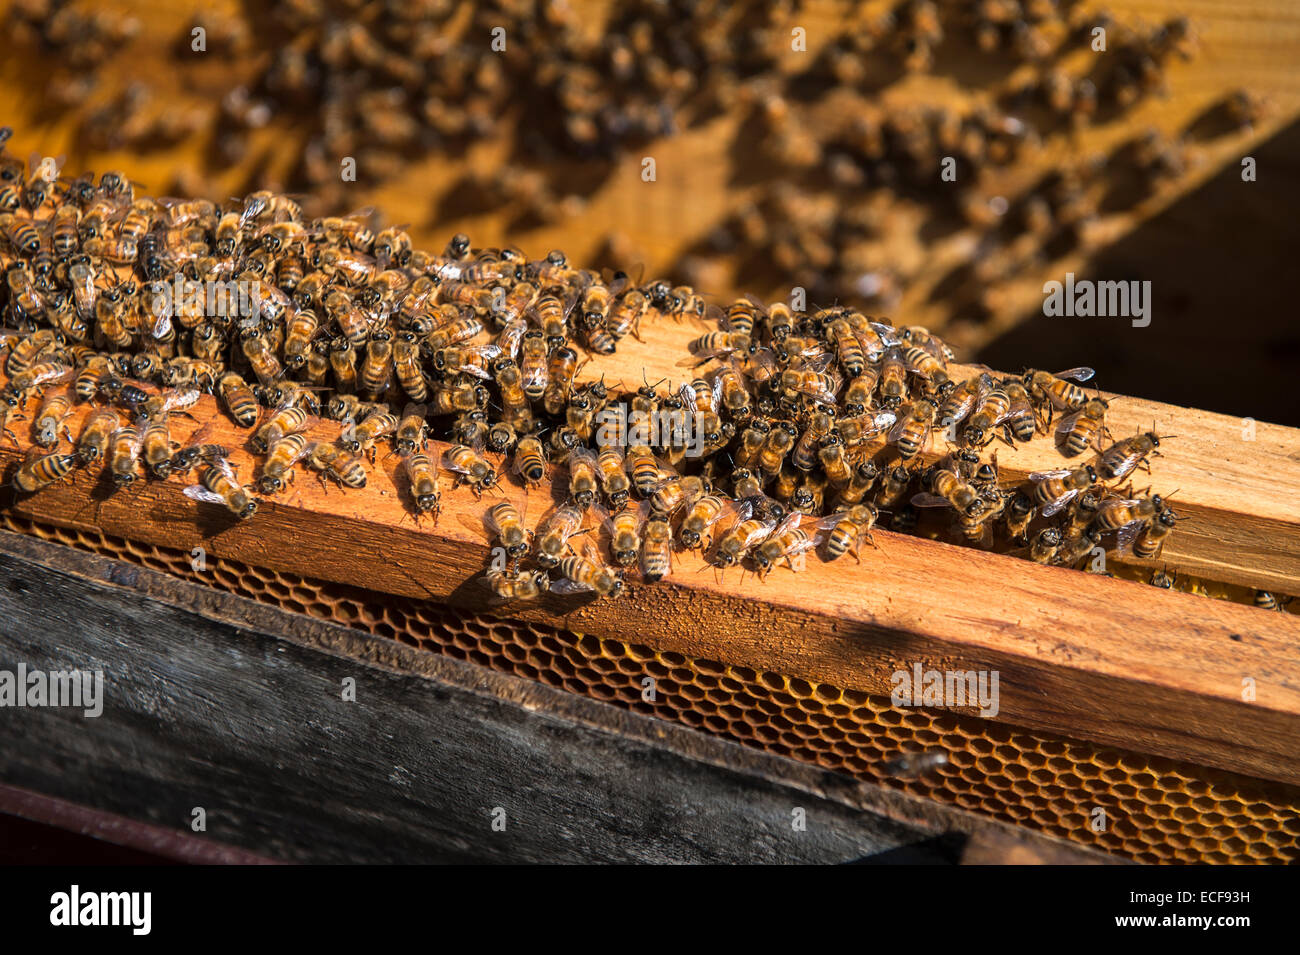 Les abeilles du miel sur un plateau d'abeilles Banque D'Images